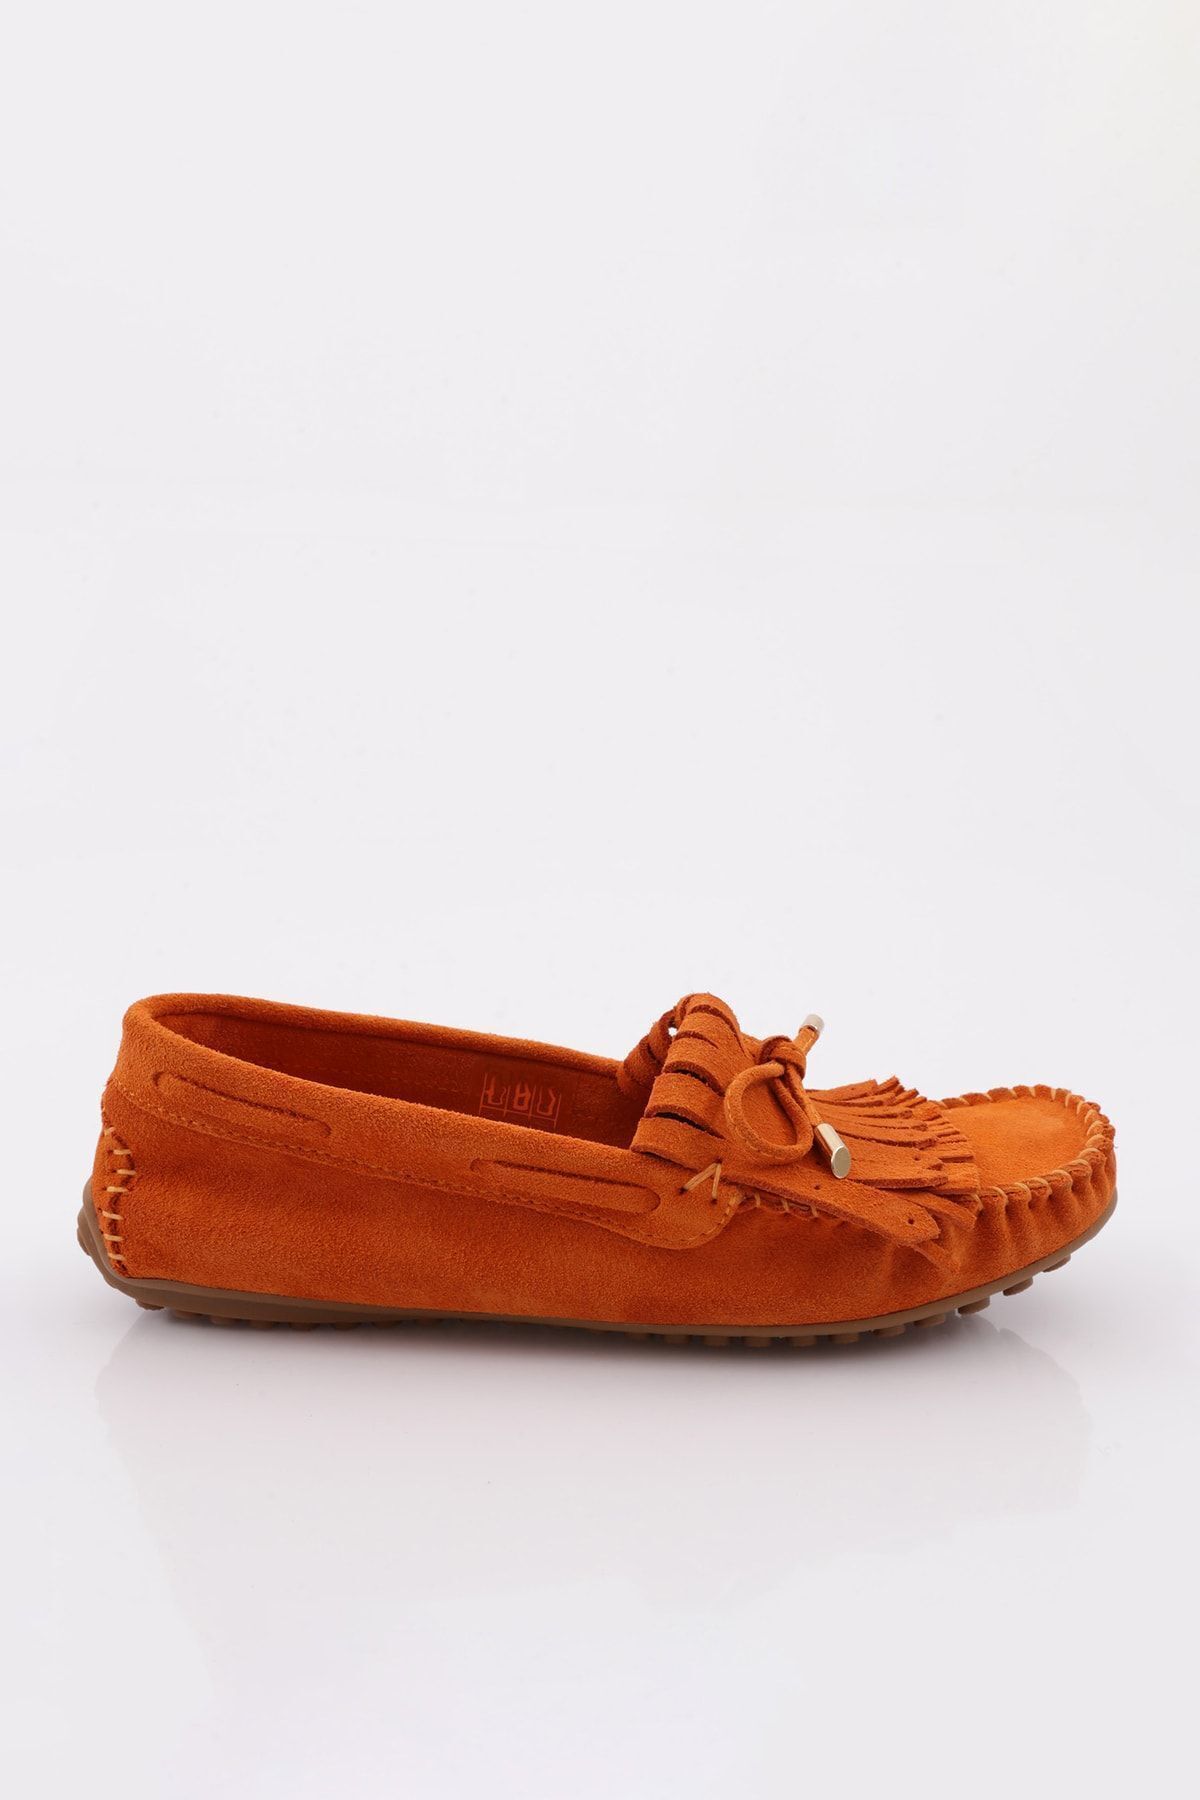 Dgn K118 Kadın Püskül Detaylı Loafer Ayakkabı Turuncu Süet Hakiki Deri